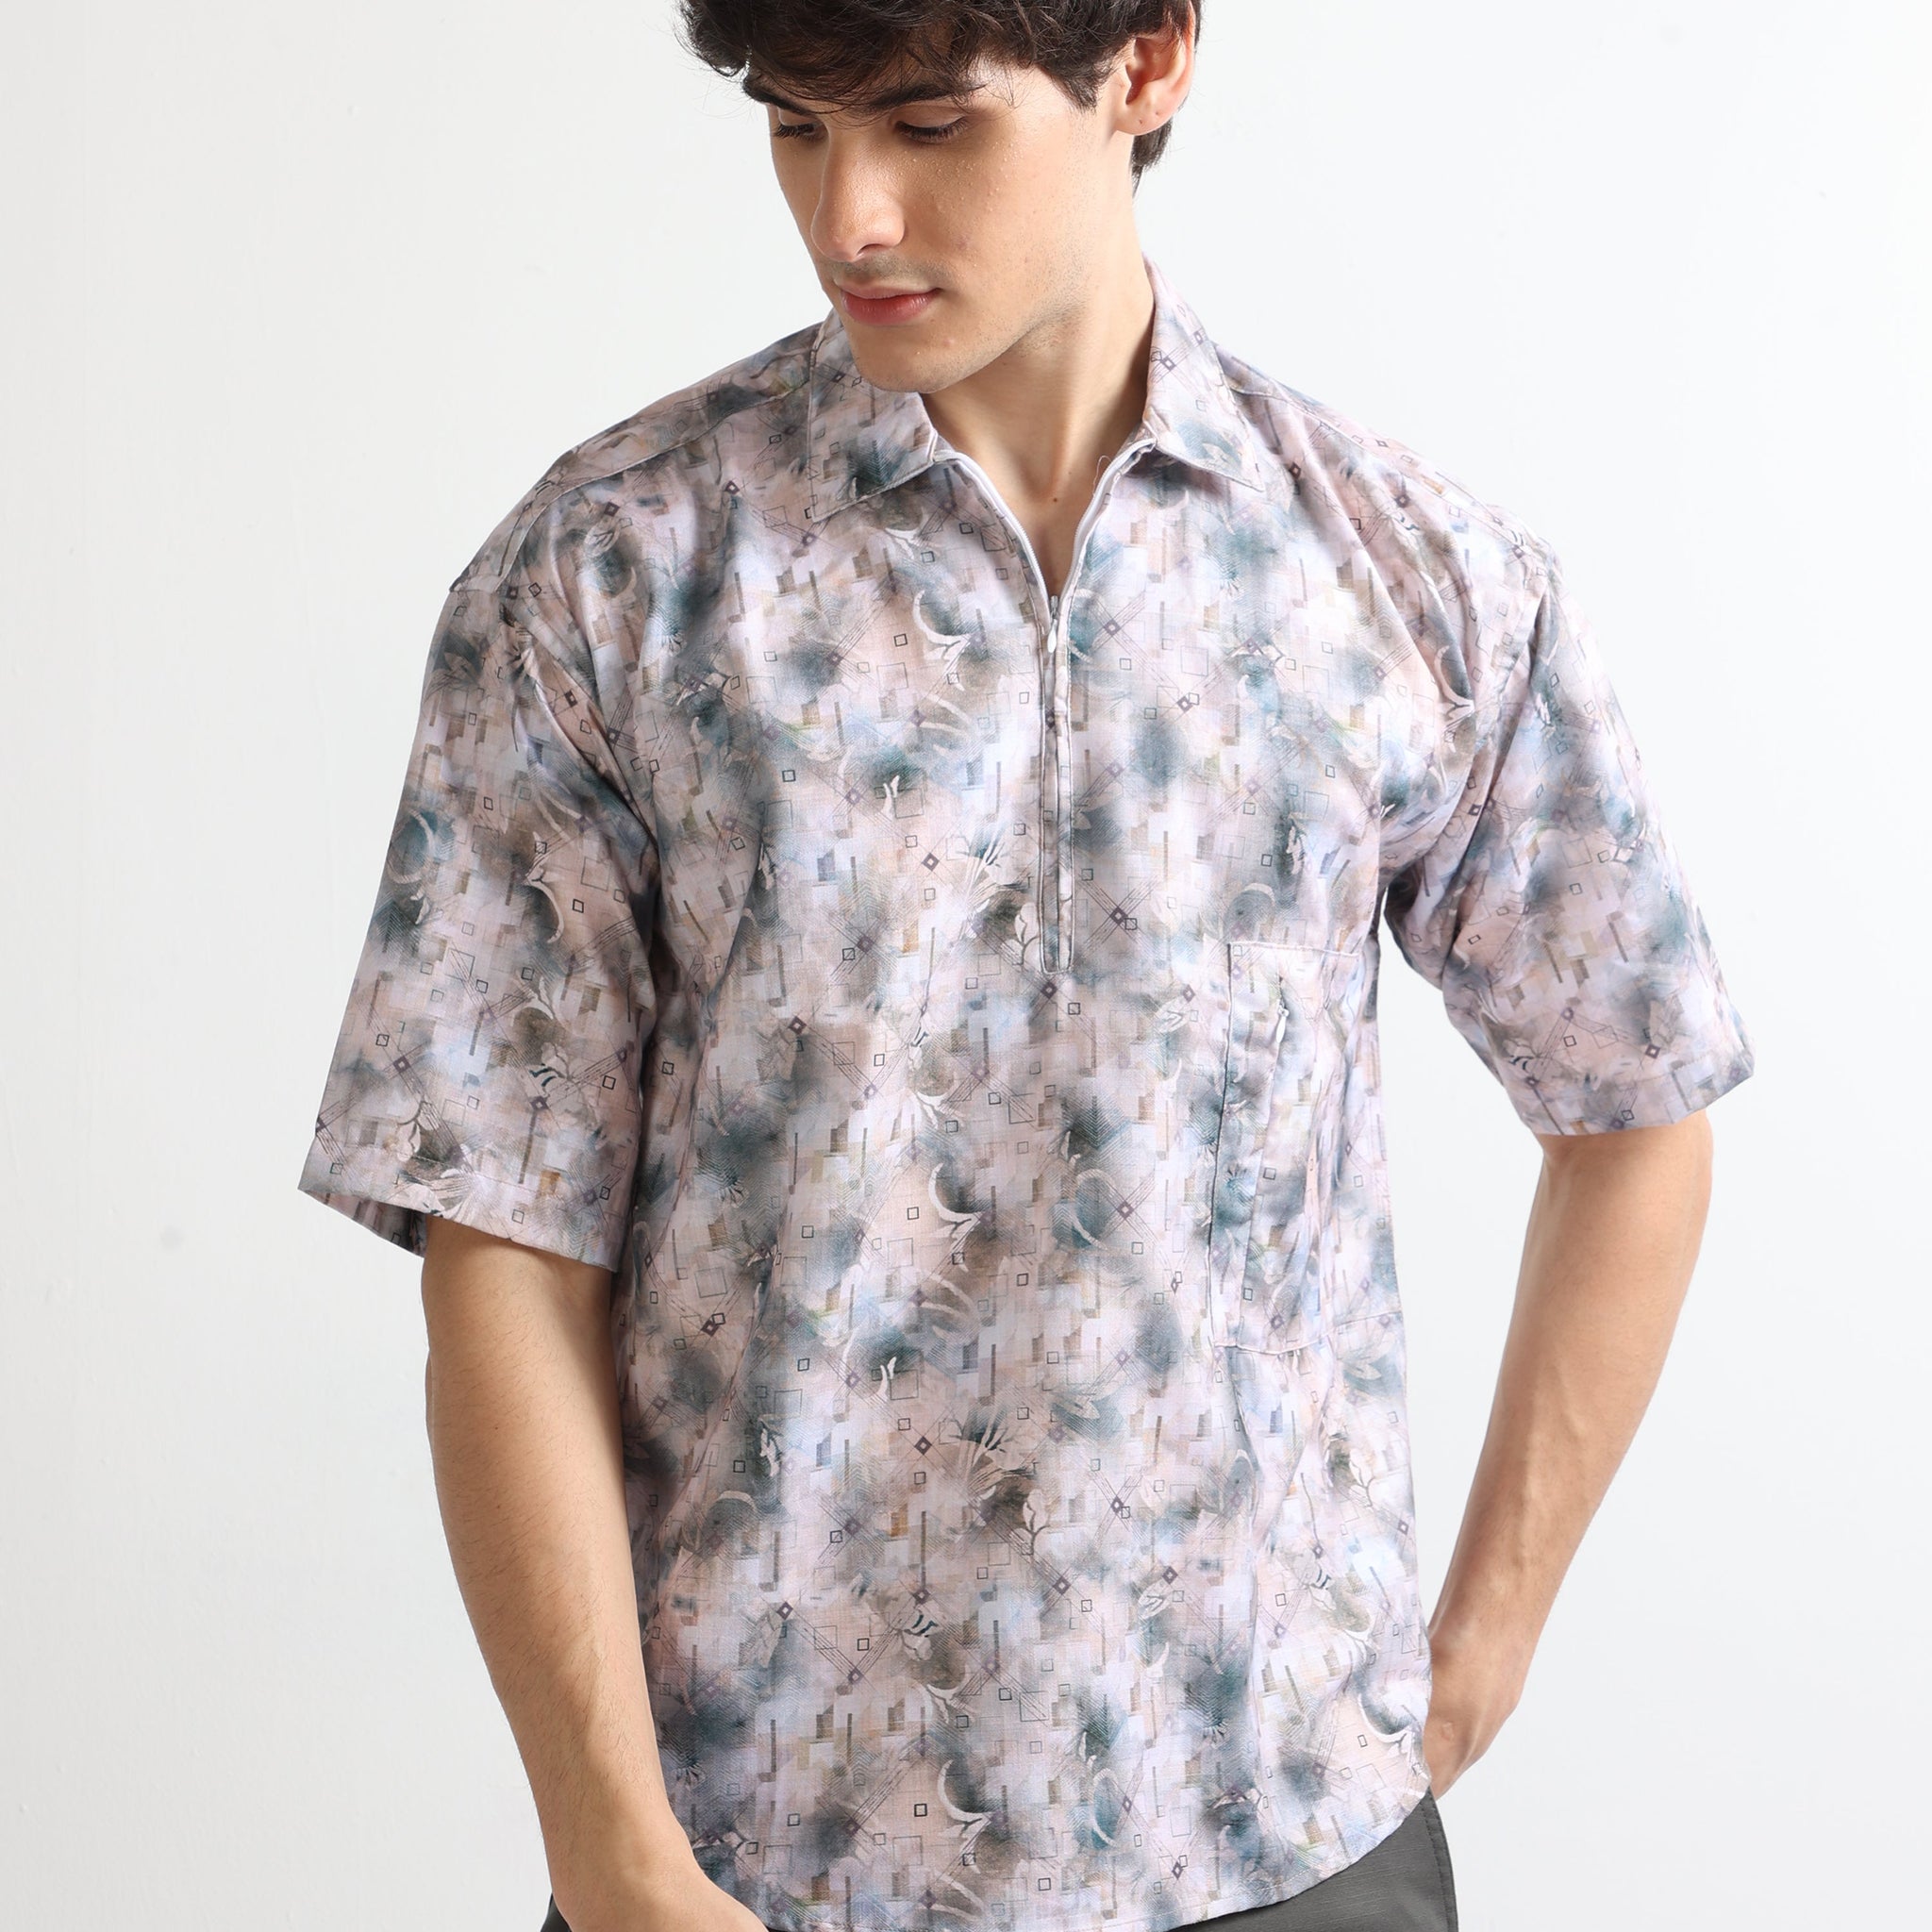 Buy Half Sleeve Digial Printed Zipper Shirt Online.